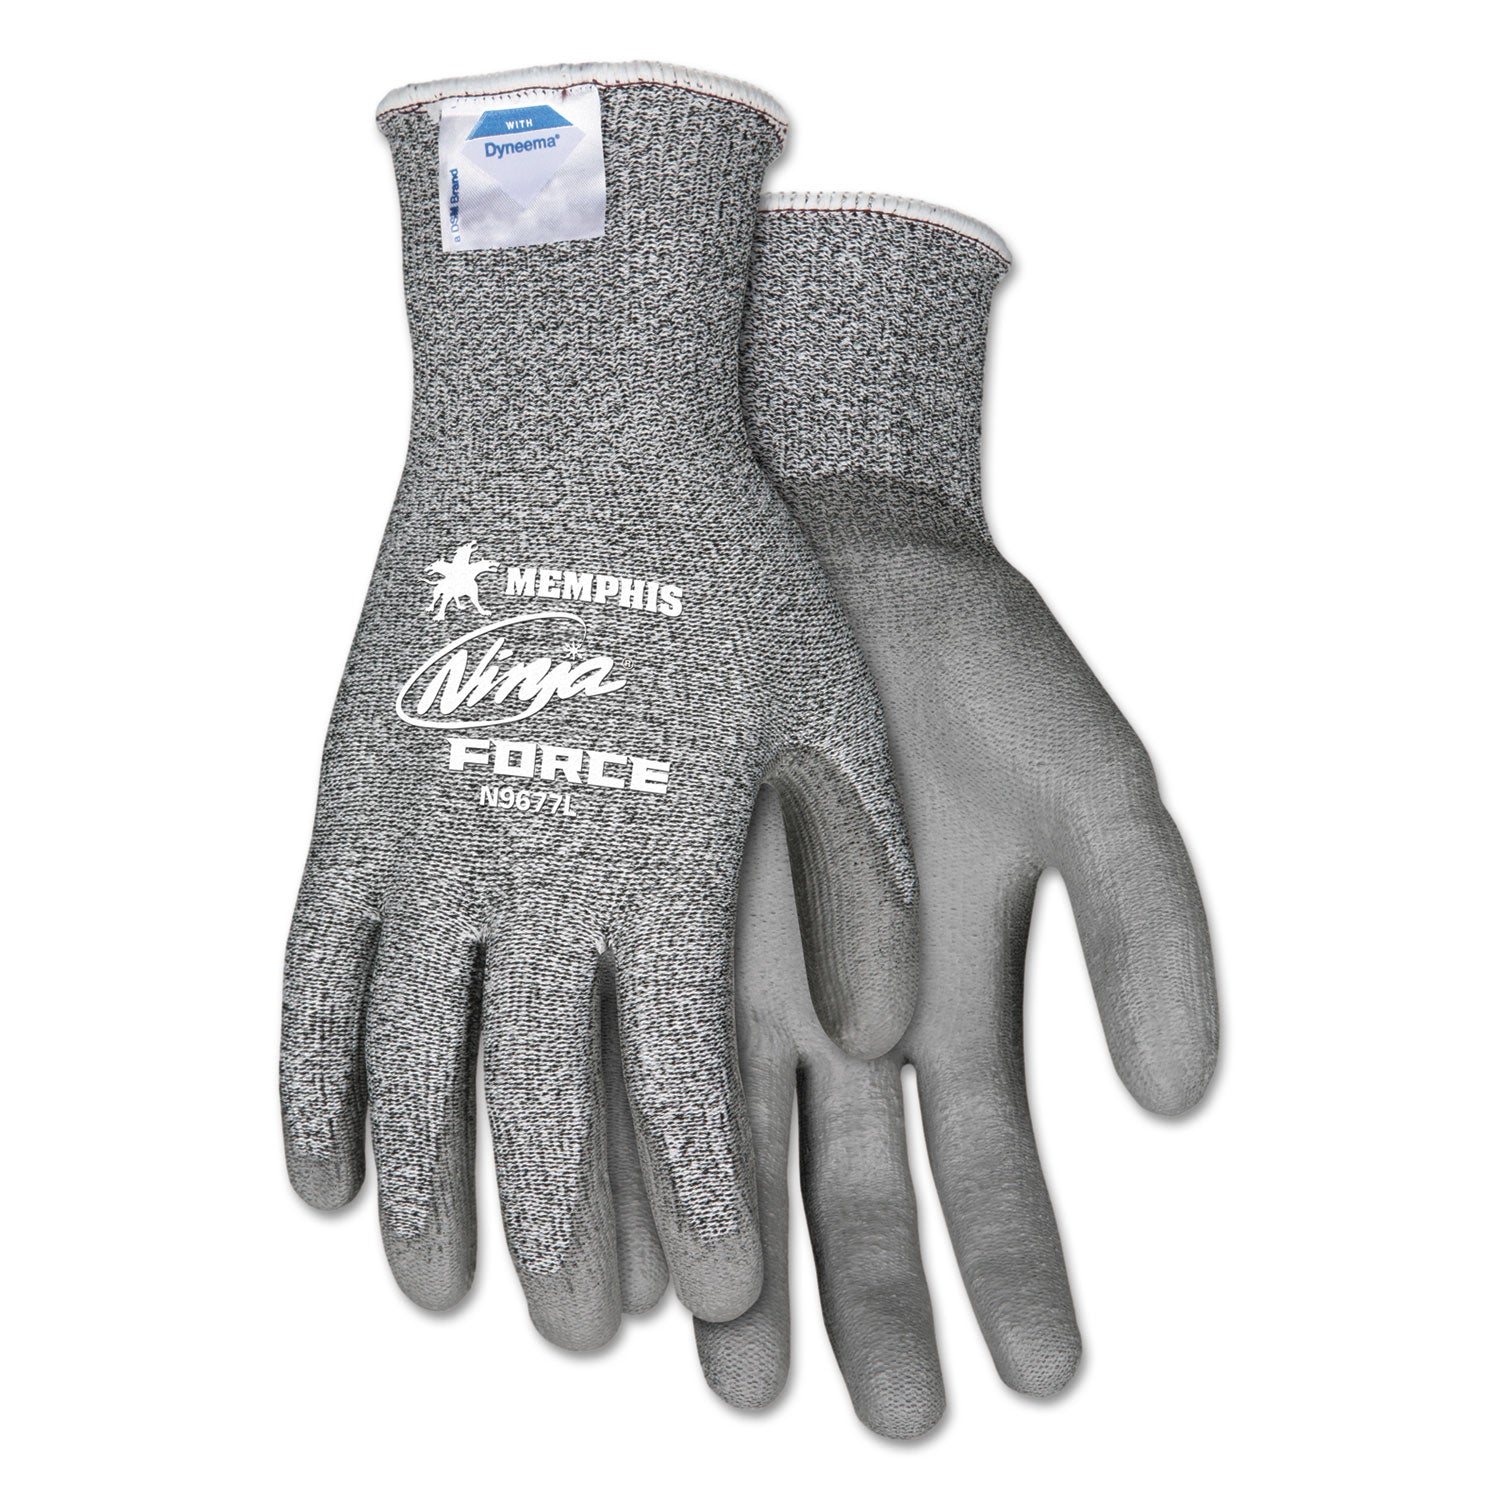 Ninja Force Polyurethane Coated Gloves, Large, Gray, Pair - 